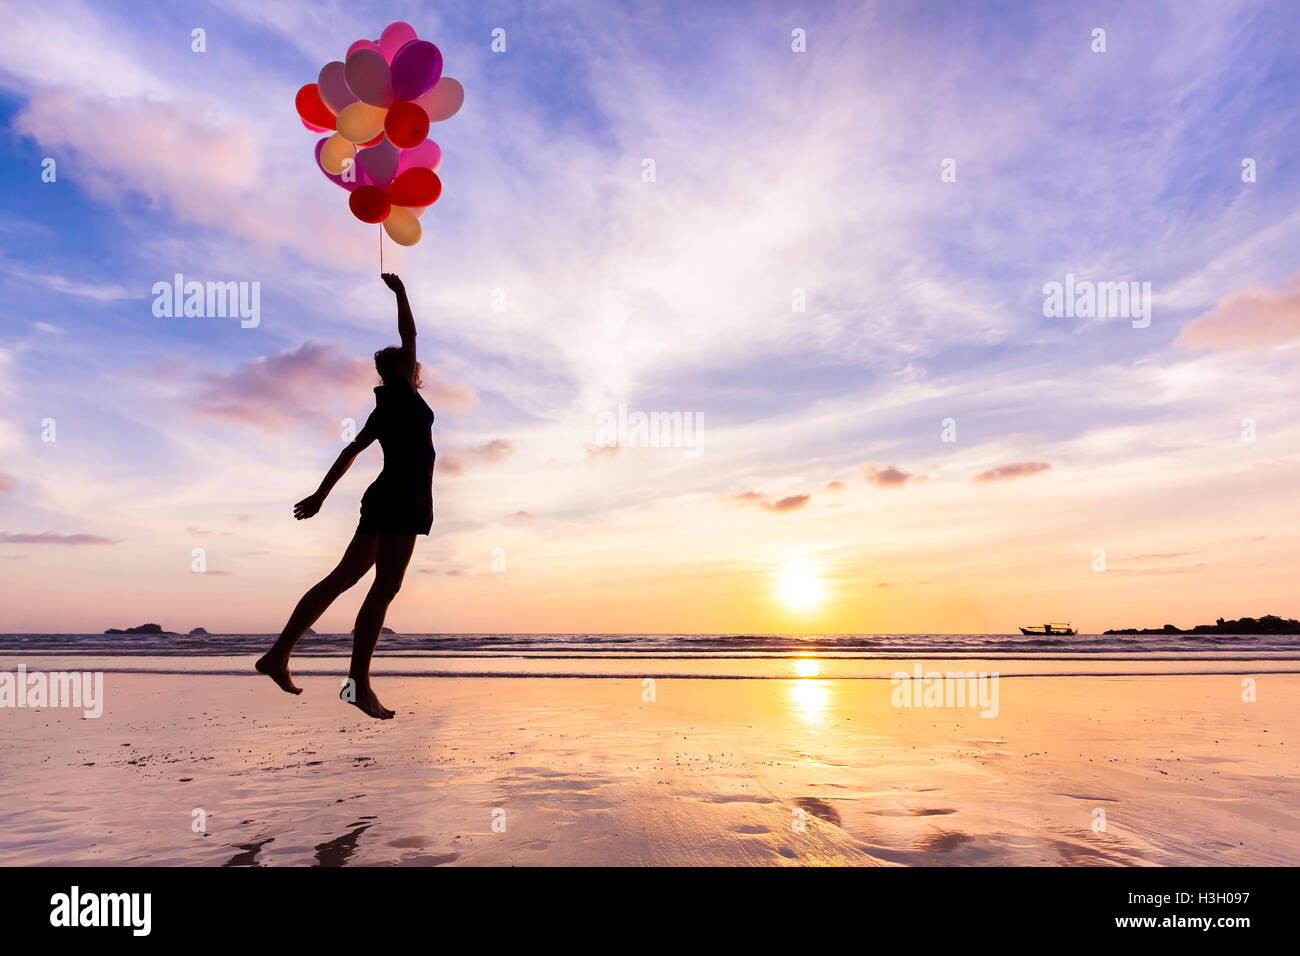 Frau in einen glücklichen Traum fliegen in den Himmel von heliumballons angehoben Stockfoto